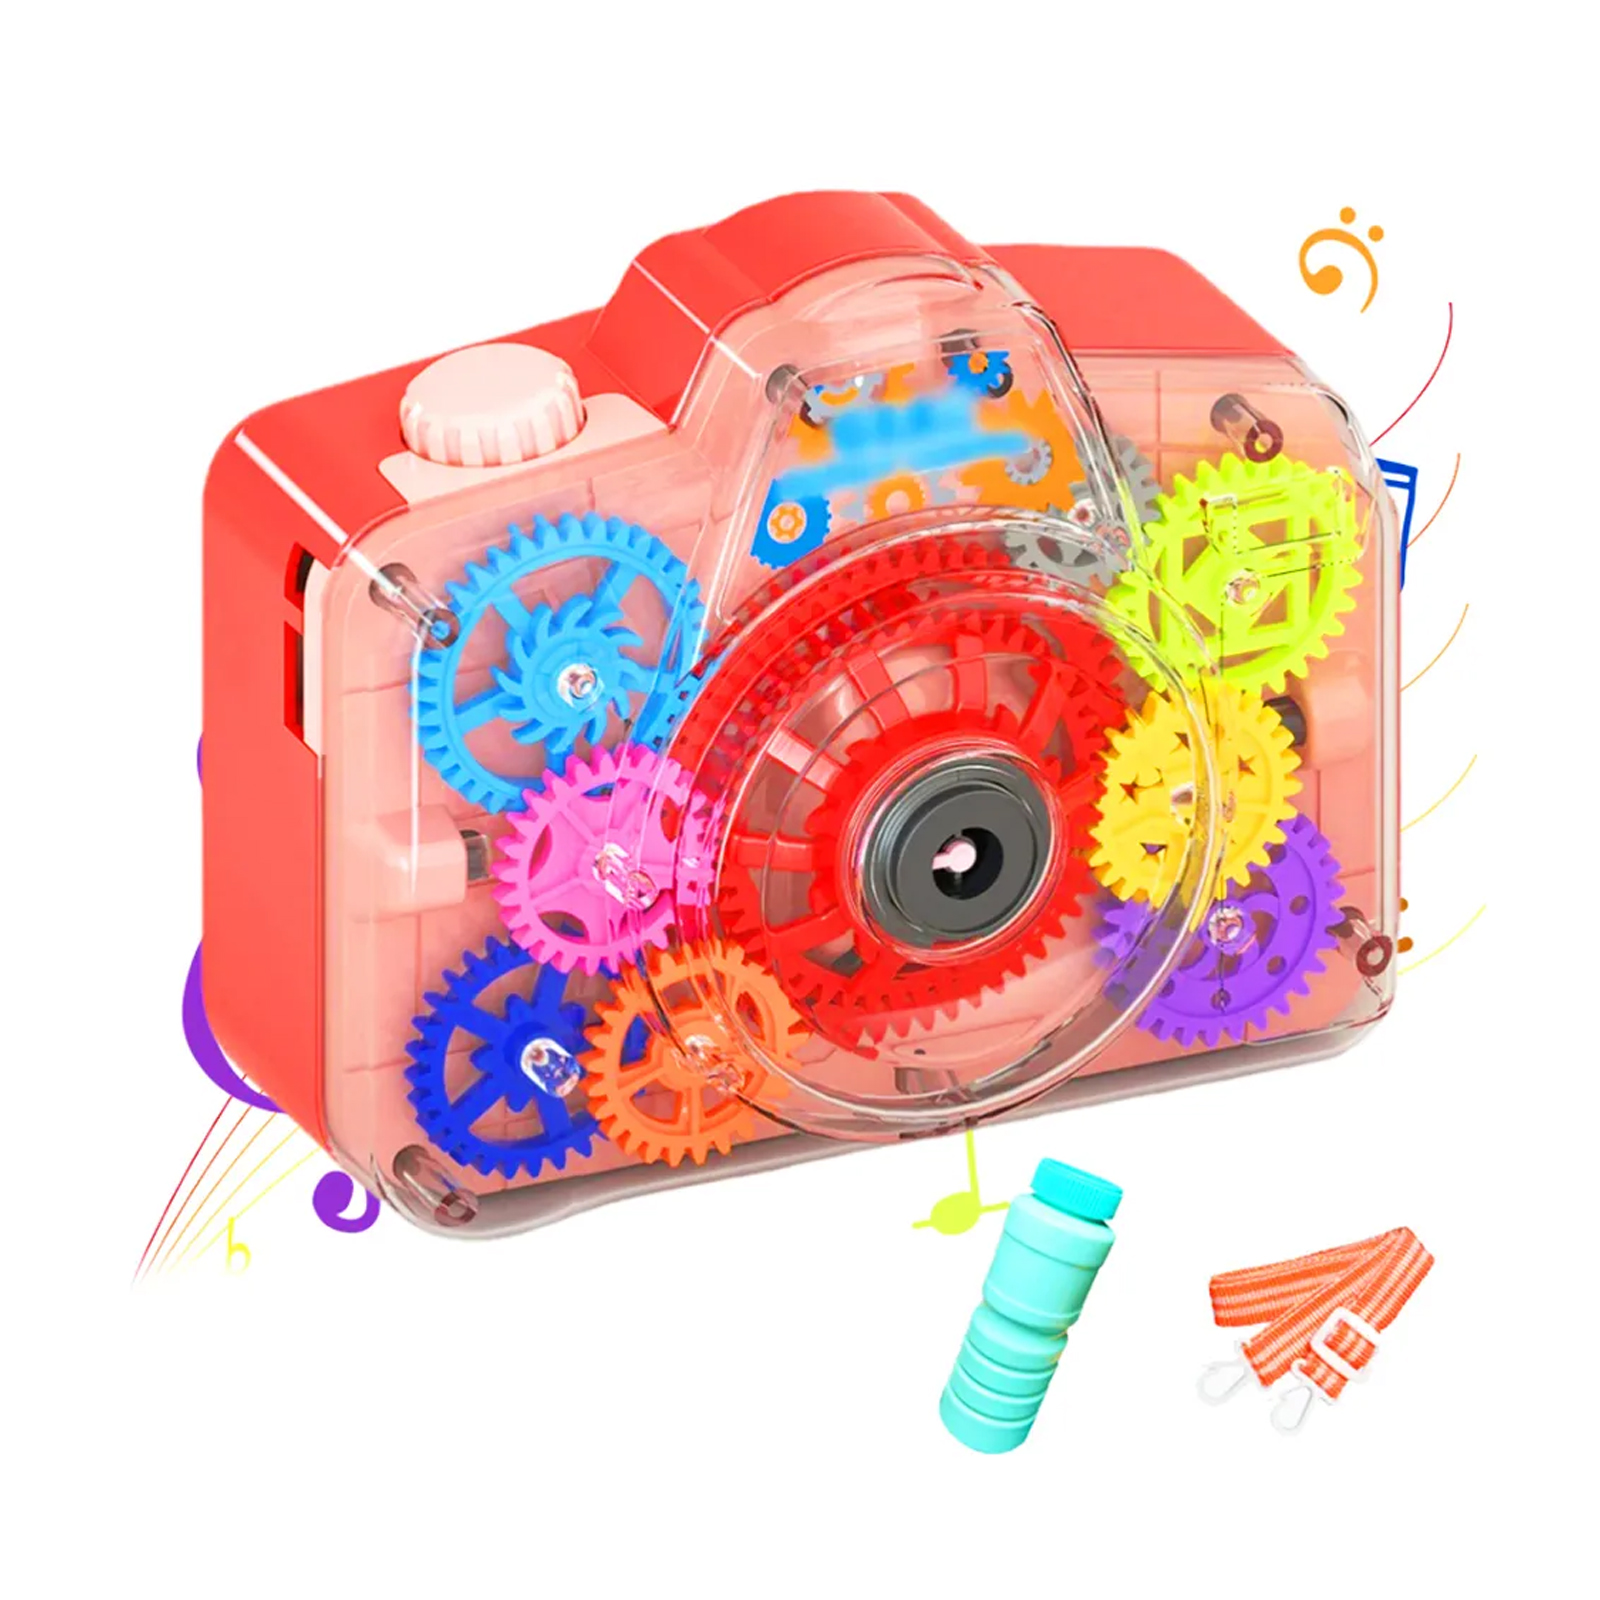 Генератор мыльных пузырей Market toys lab Фотоаппарат Bubble Camera красный